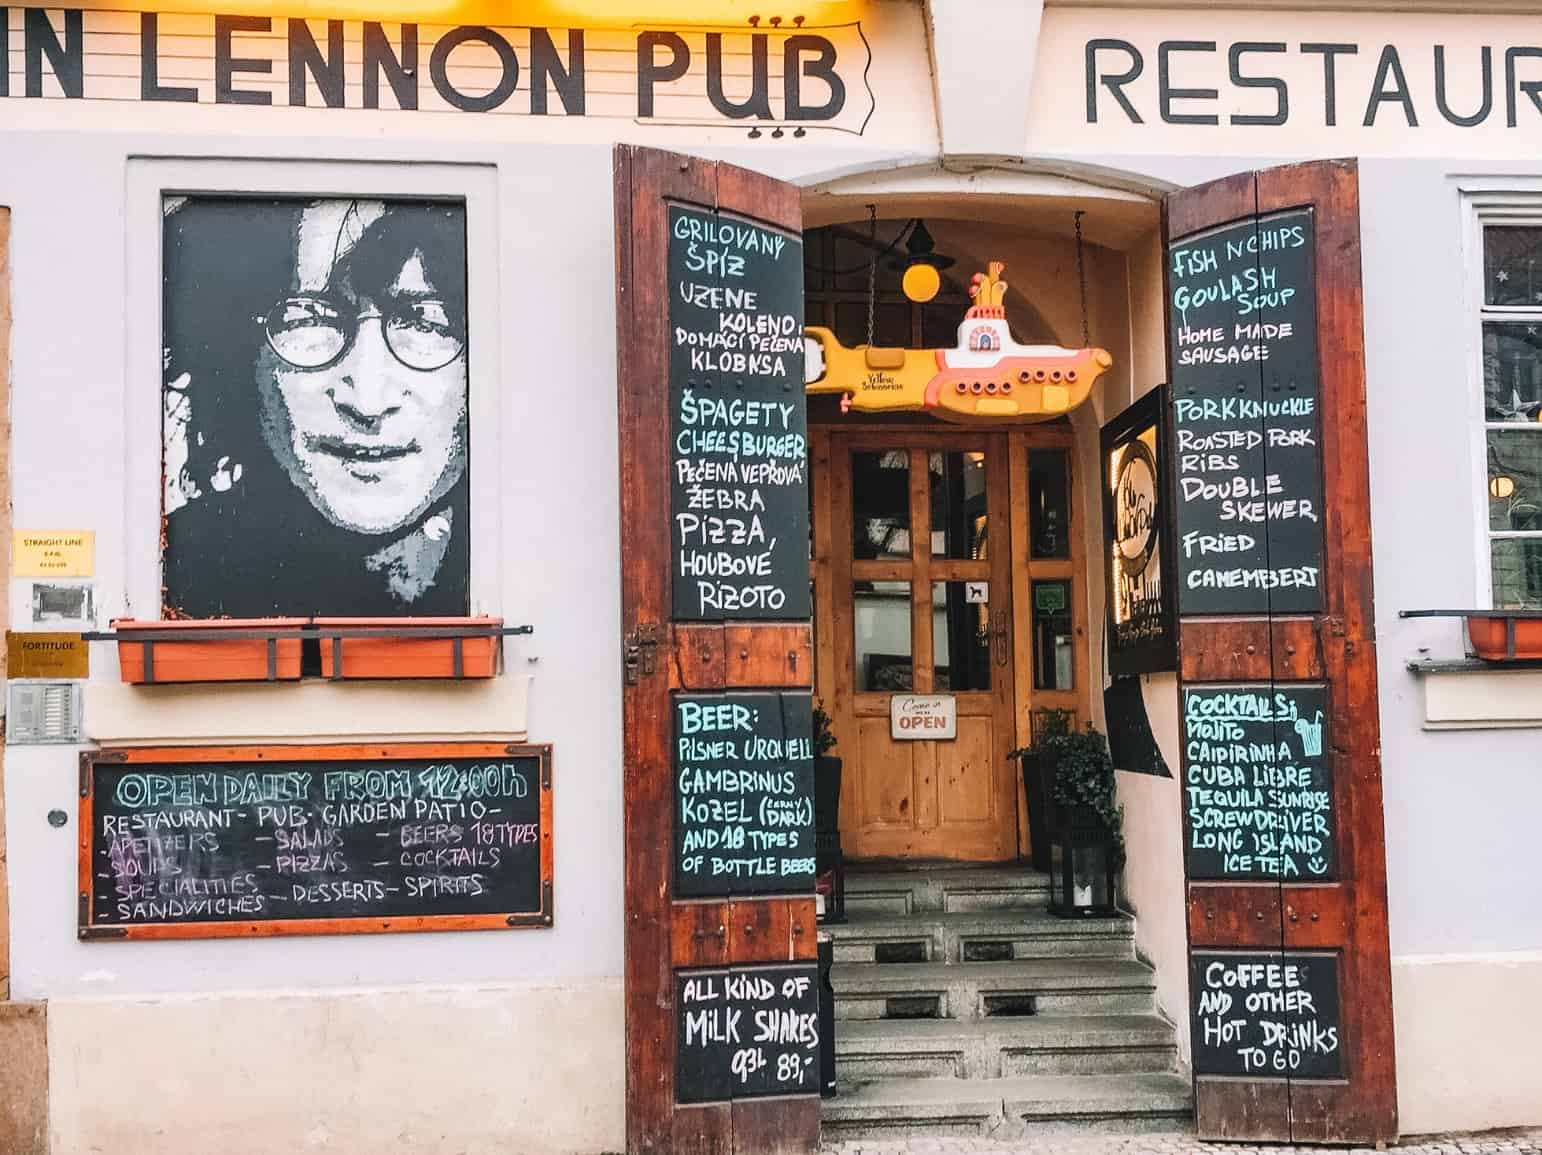 The outside of the John Lennon Pub in Prague.